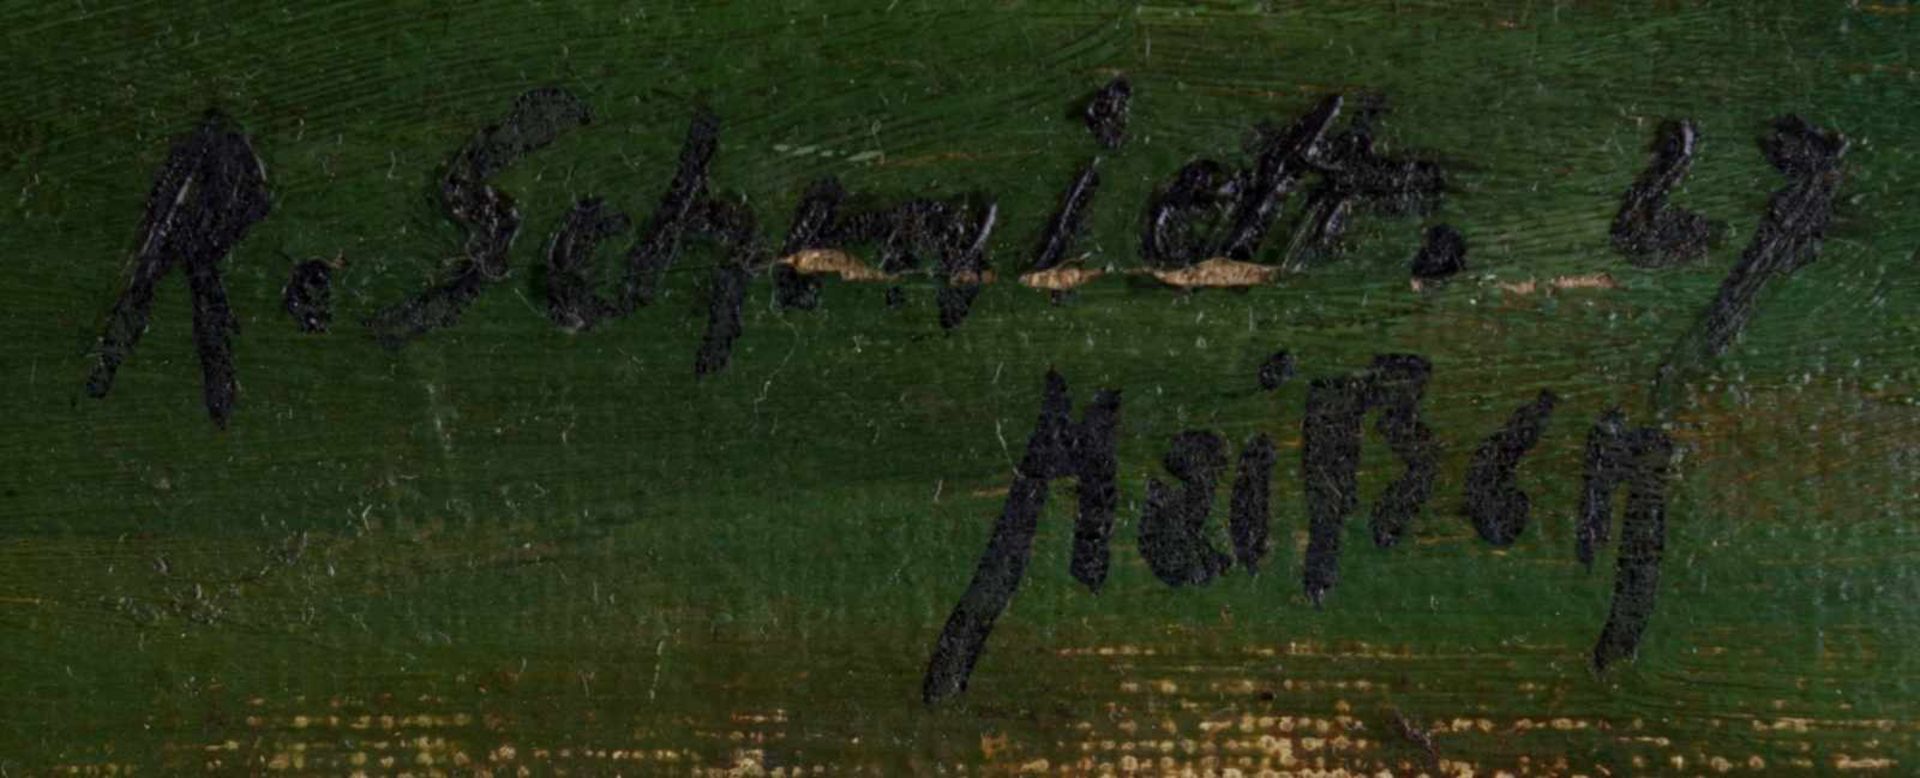 Rudolf SCHMIDT (1873-1963) "Landschaft bei Meißen mit Schafen" Gemälde Öl/Leinwand, 53,5 cm x 75 cm, - Image 5 of 6